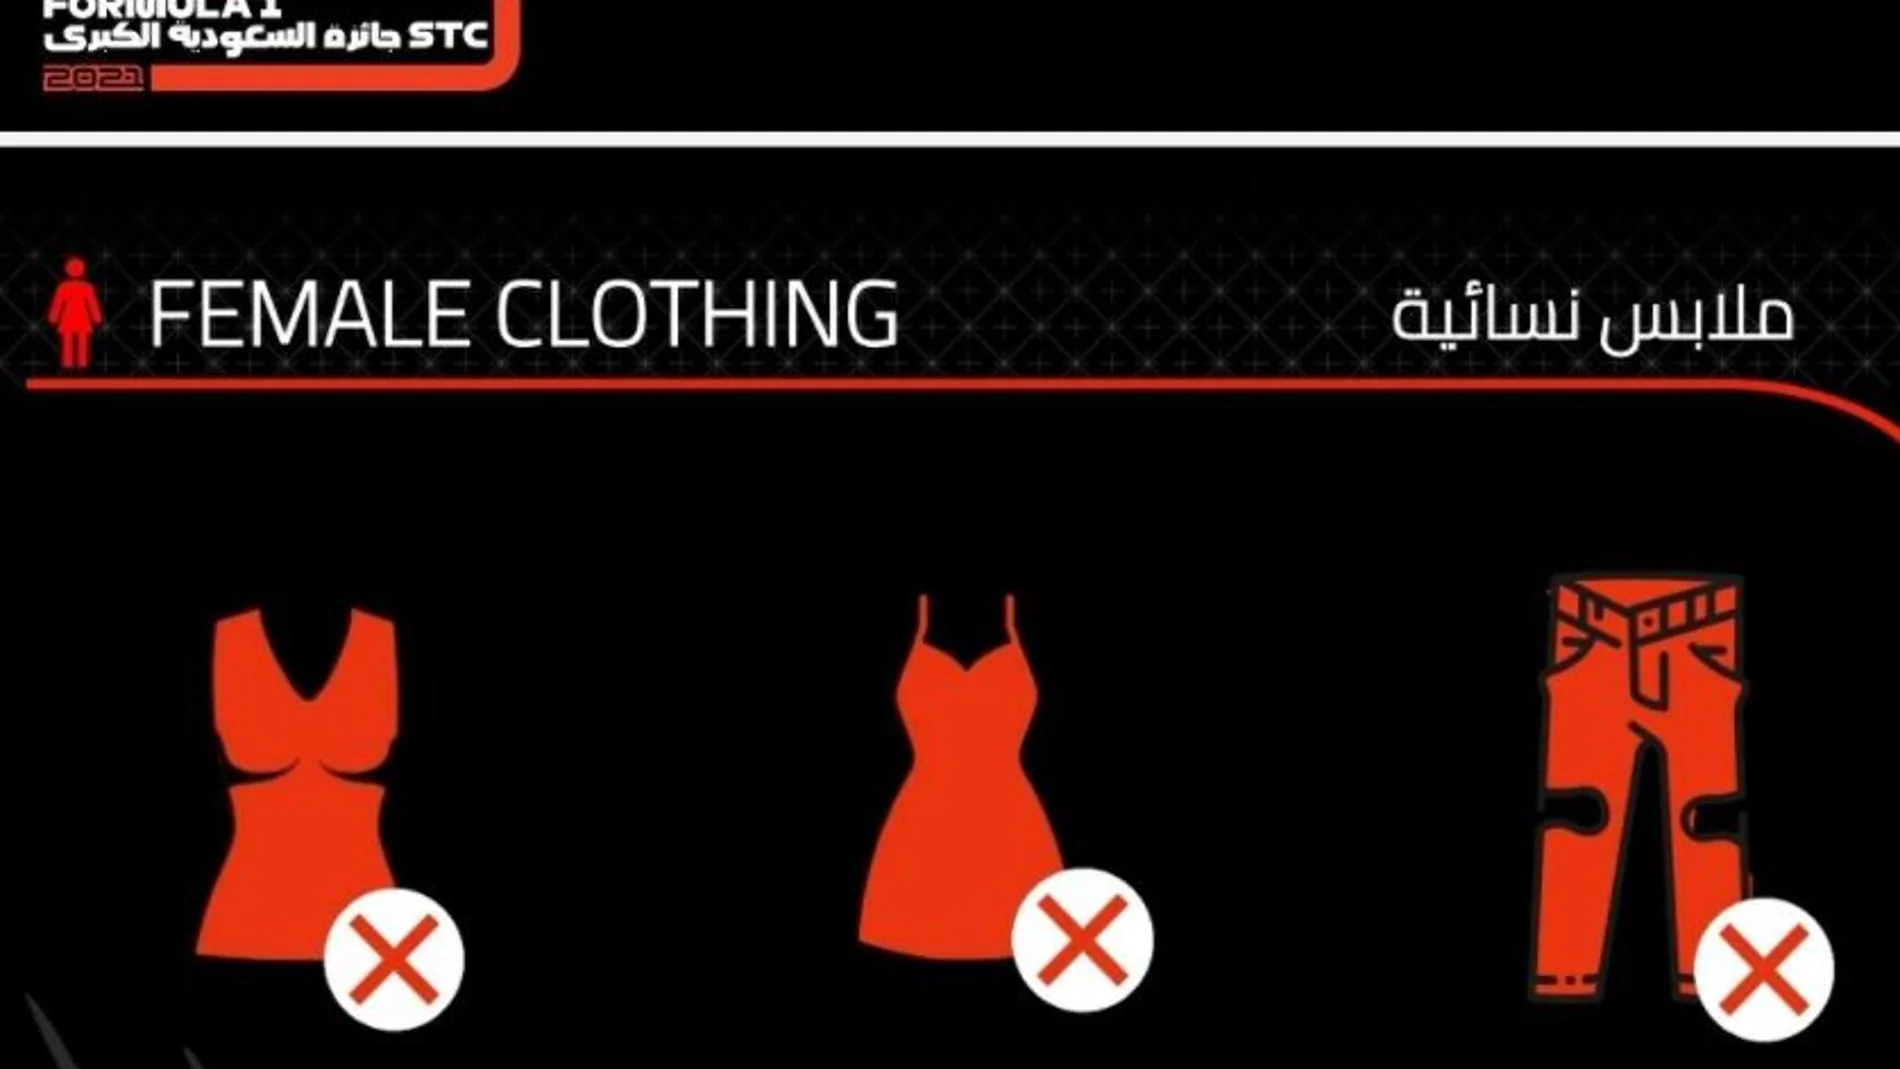 El estricto código de vestimenta impuesto por el GP de Arabia Saudí